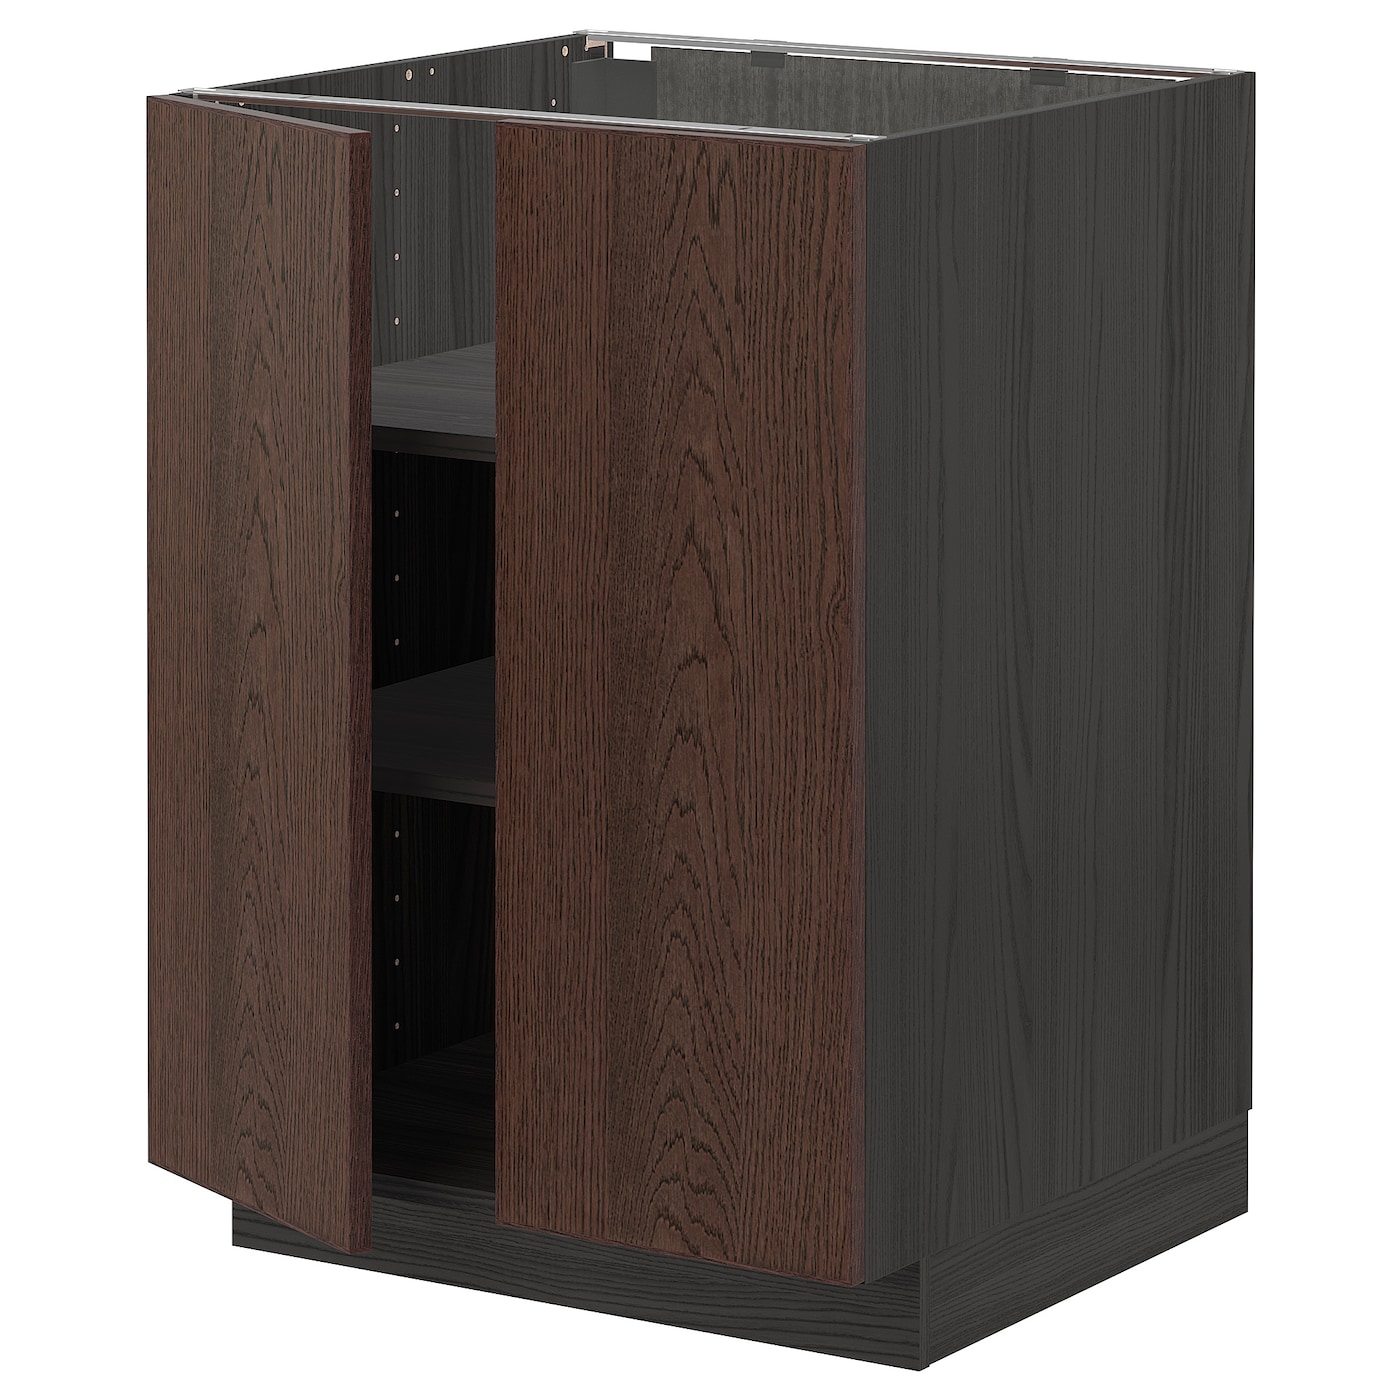 Напольный кухонный шкаф  - IKEA METOD, 88x62x60см, черный/коричневый, МЕТОД ИКЕА